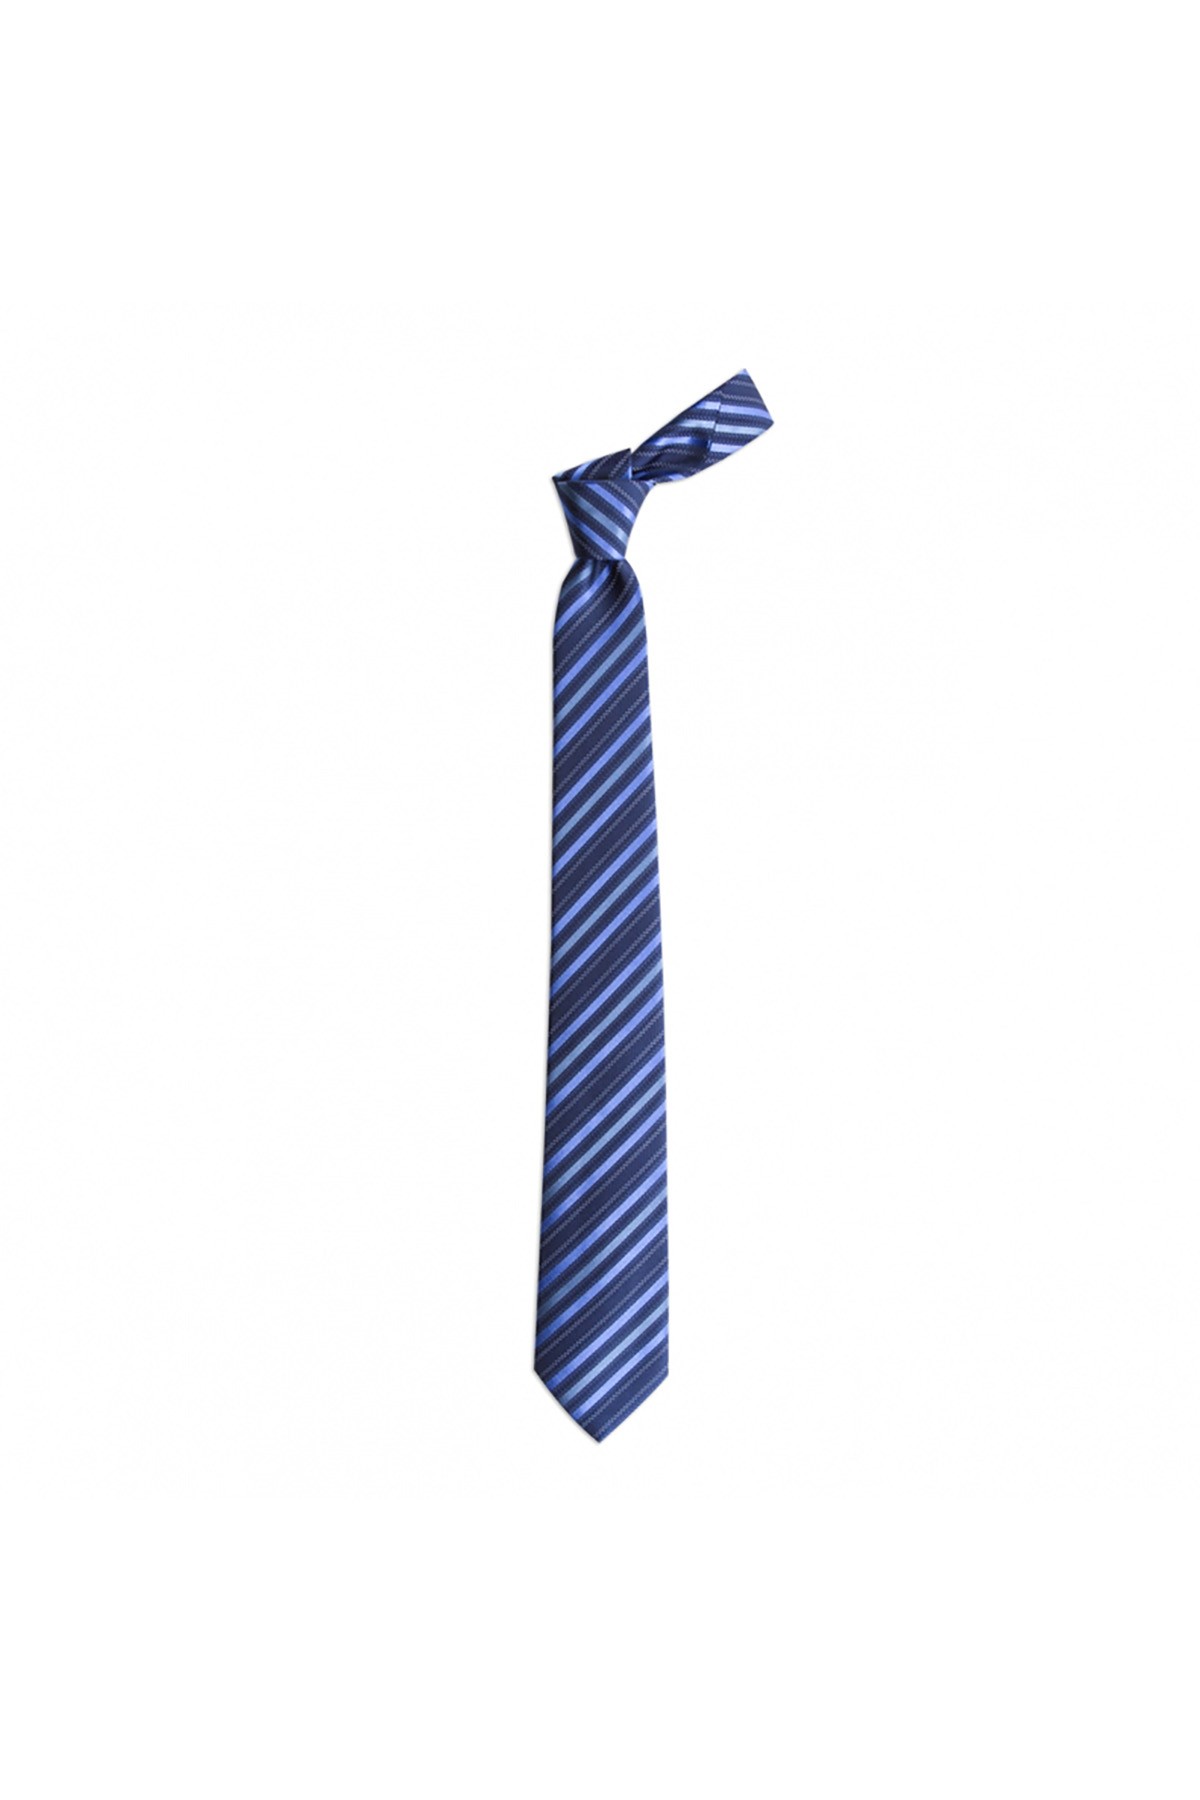 Çok çizgili 7,5 cm genişliğinde klasik ipek kravat - Lacivert